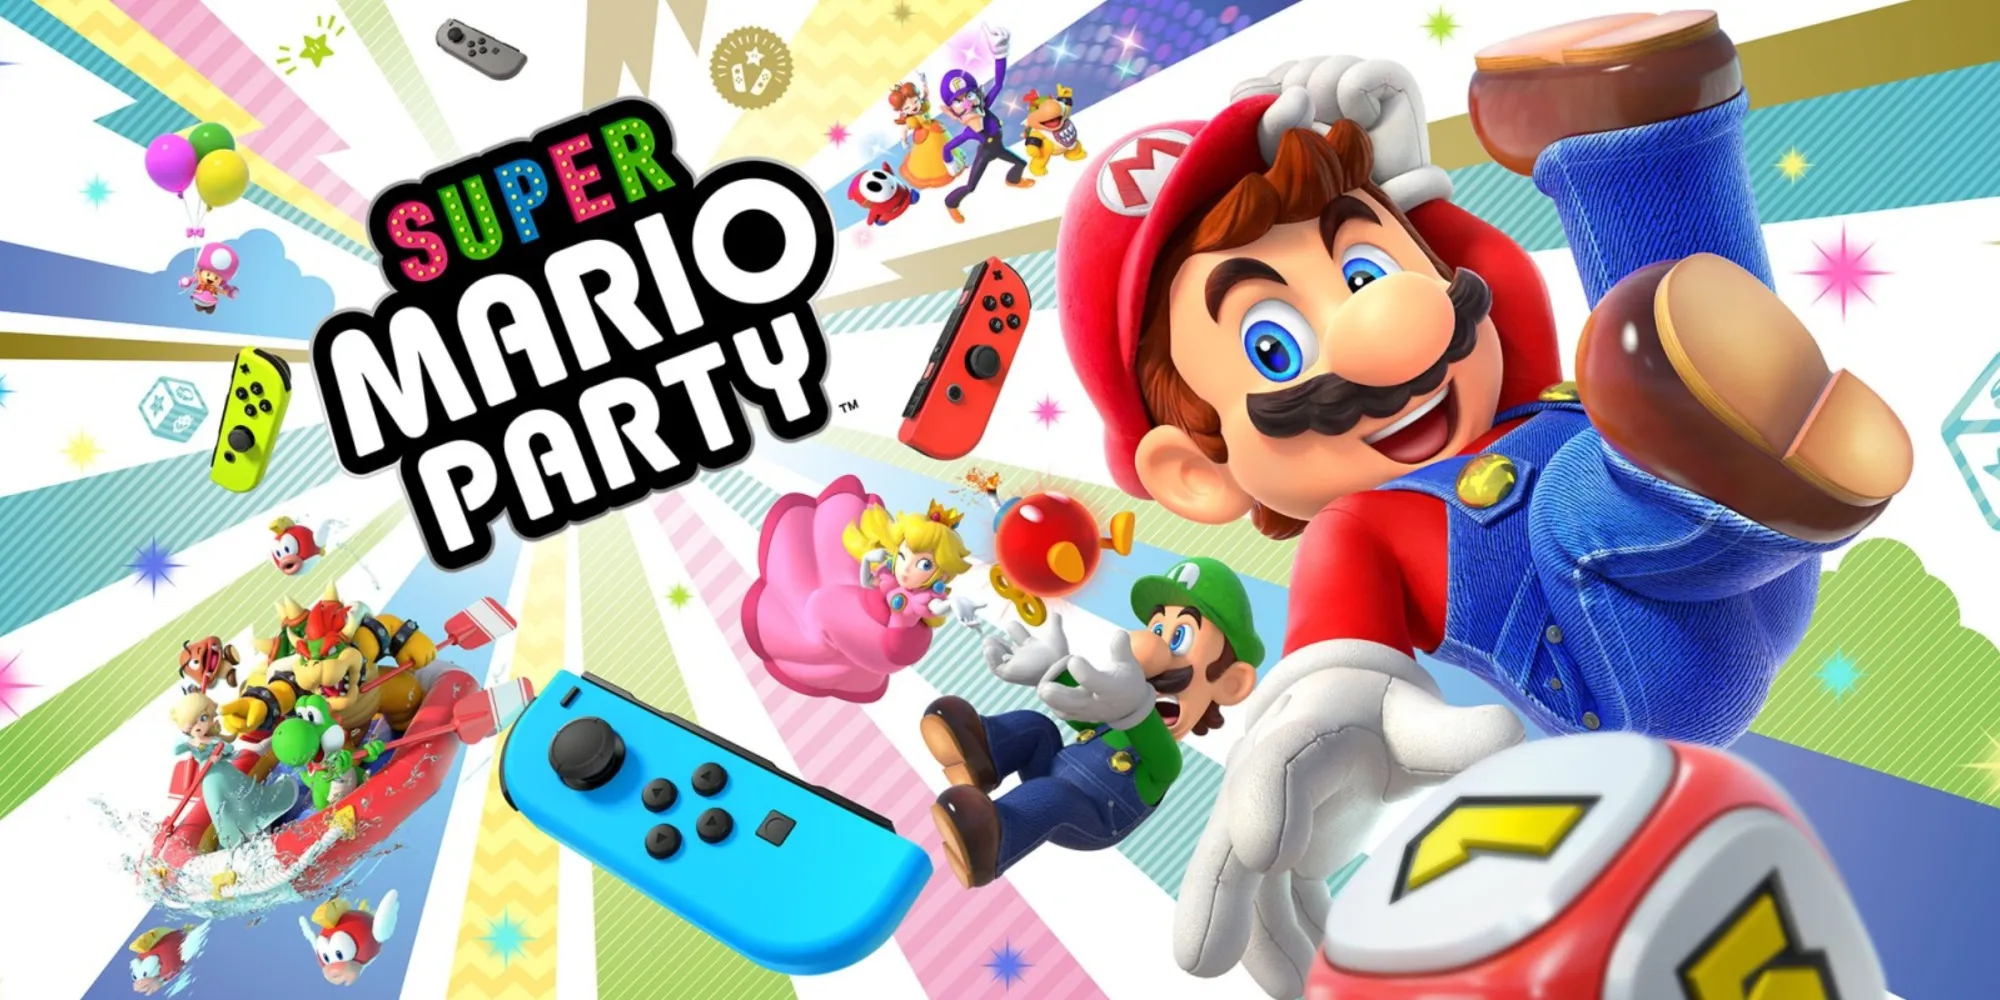 Arte promocional de Super Mario Party